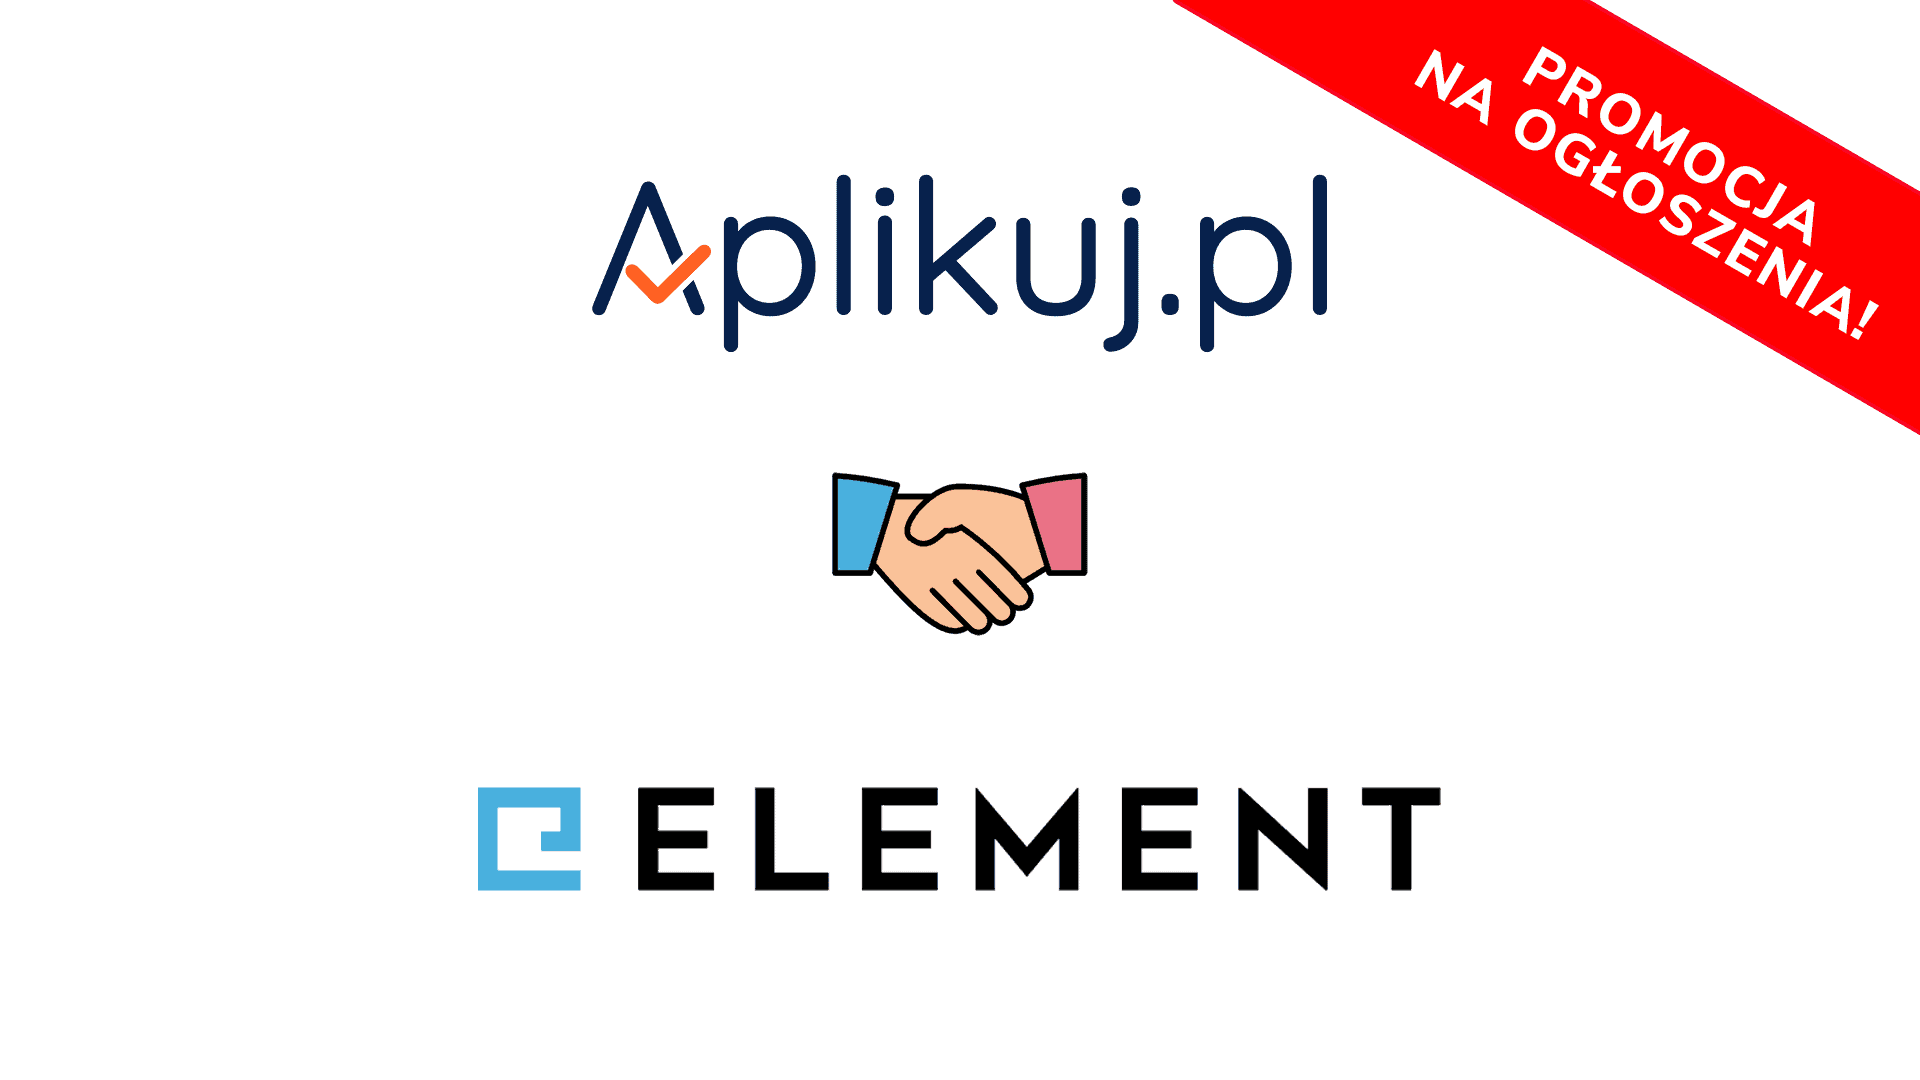 Portal rekrutacyjny Aplikuj.pl już dostępny w Element. Promocja na ogłoszenia.